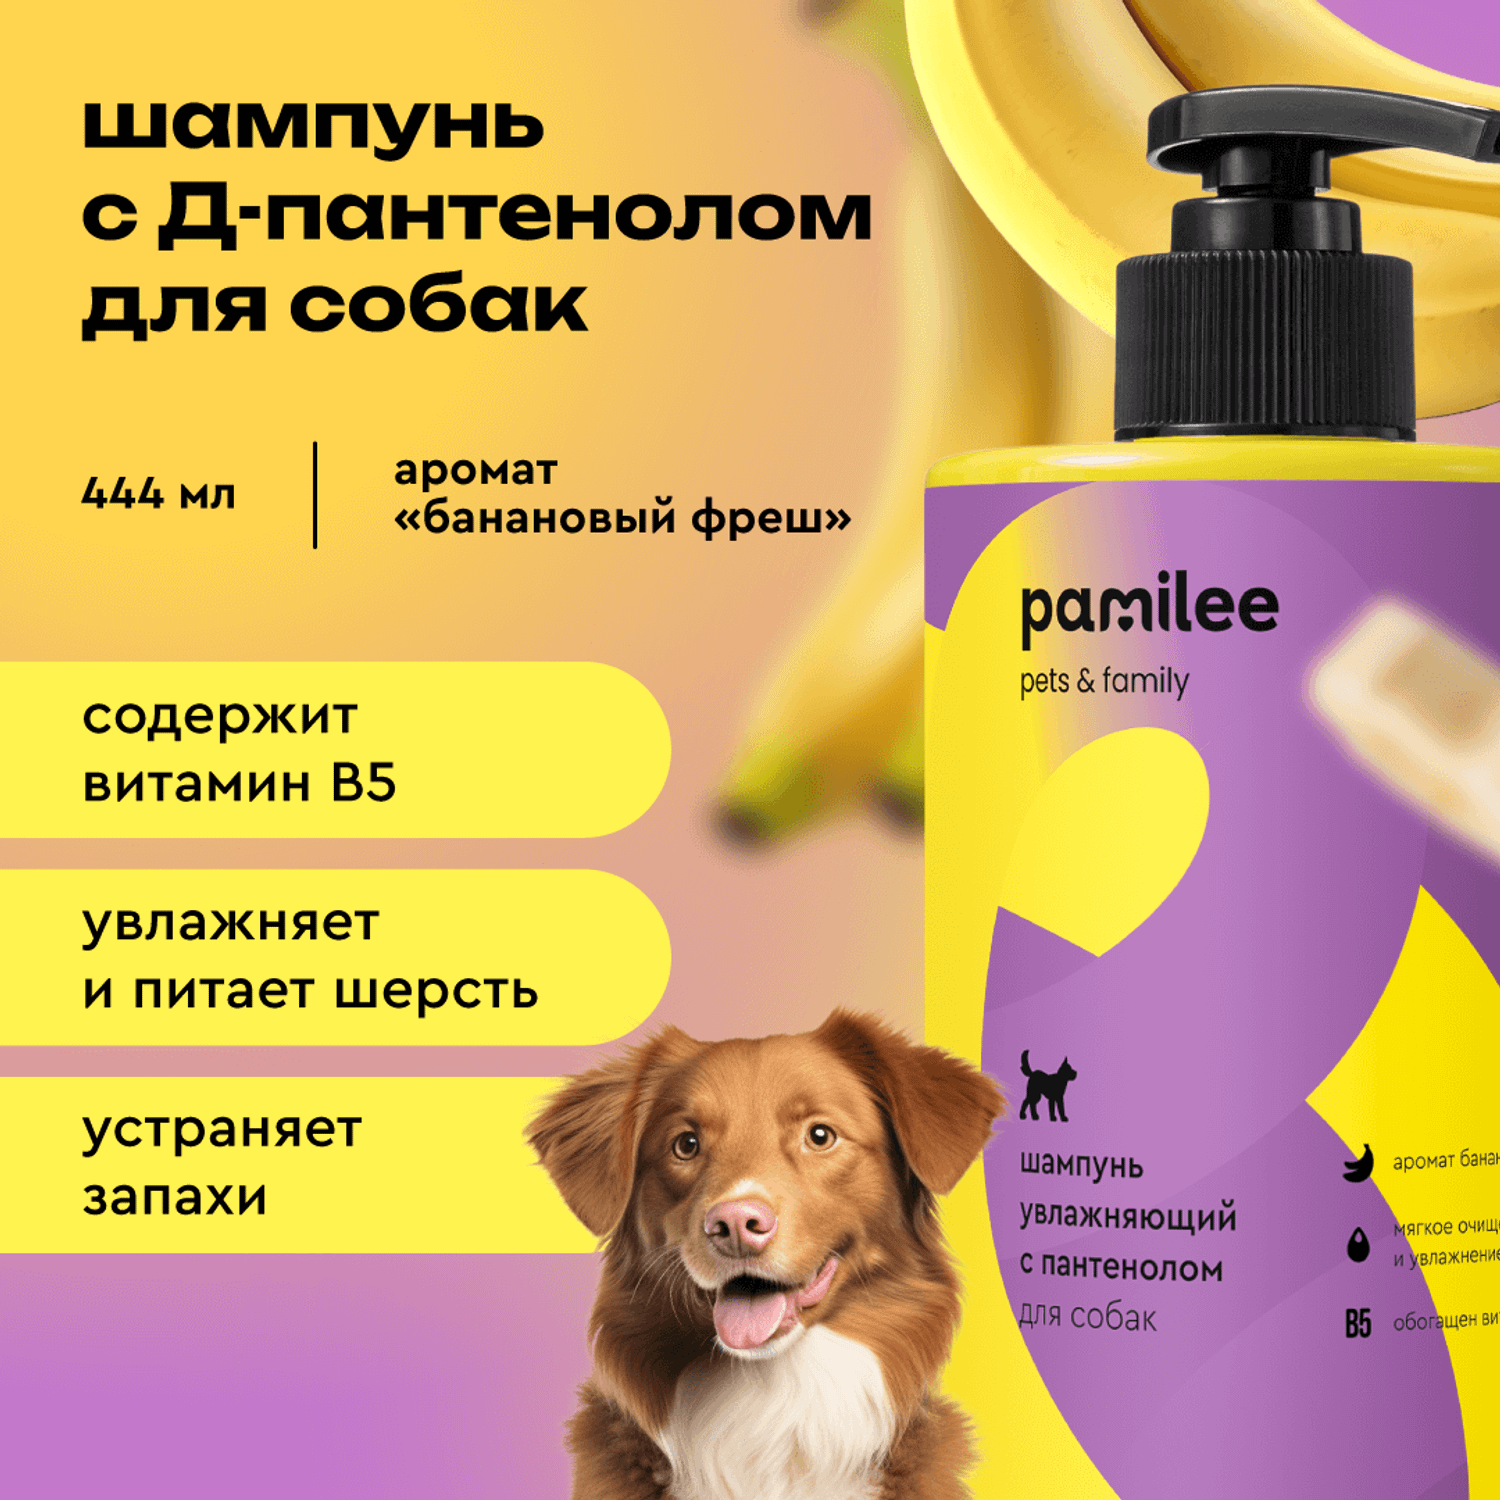 Шампунь с ароматом банана Pamilee универсальный домашний увлажняющий для собак - фото 1